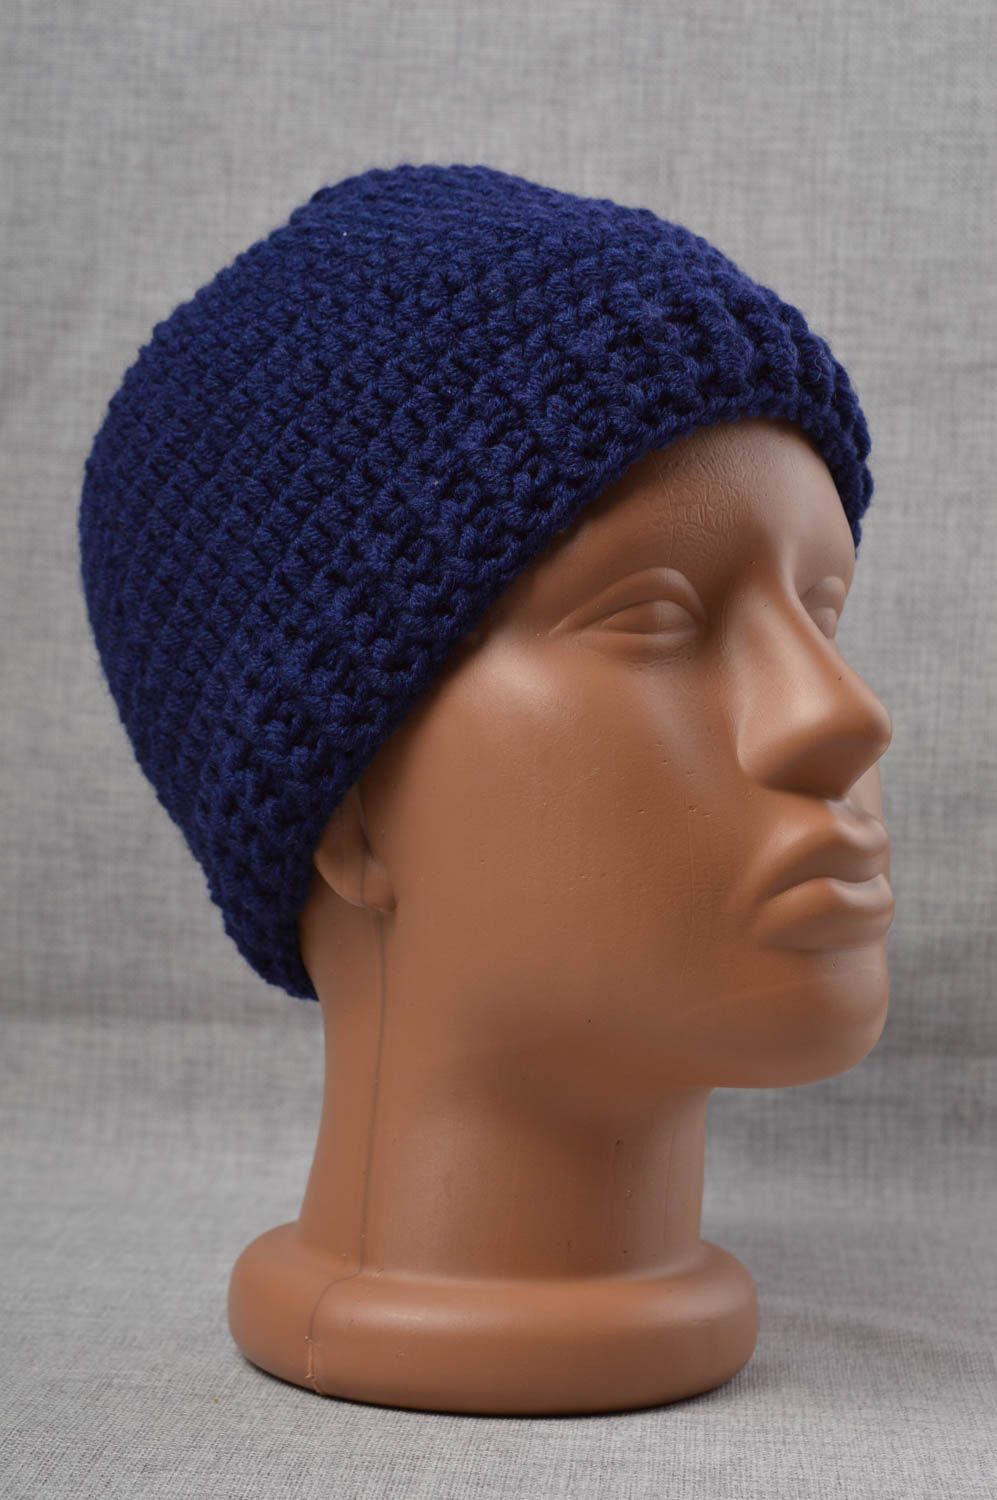 Шапка ручной работы зимняя шапка головной убор для мальчика темно синего цвета фото 1